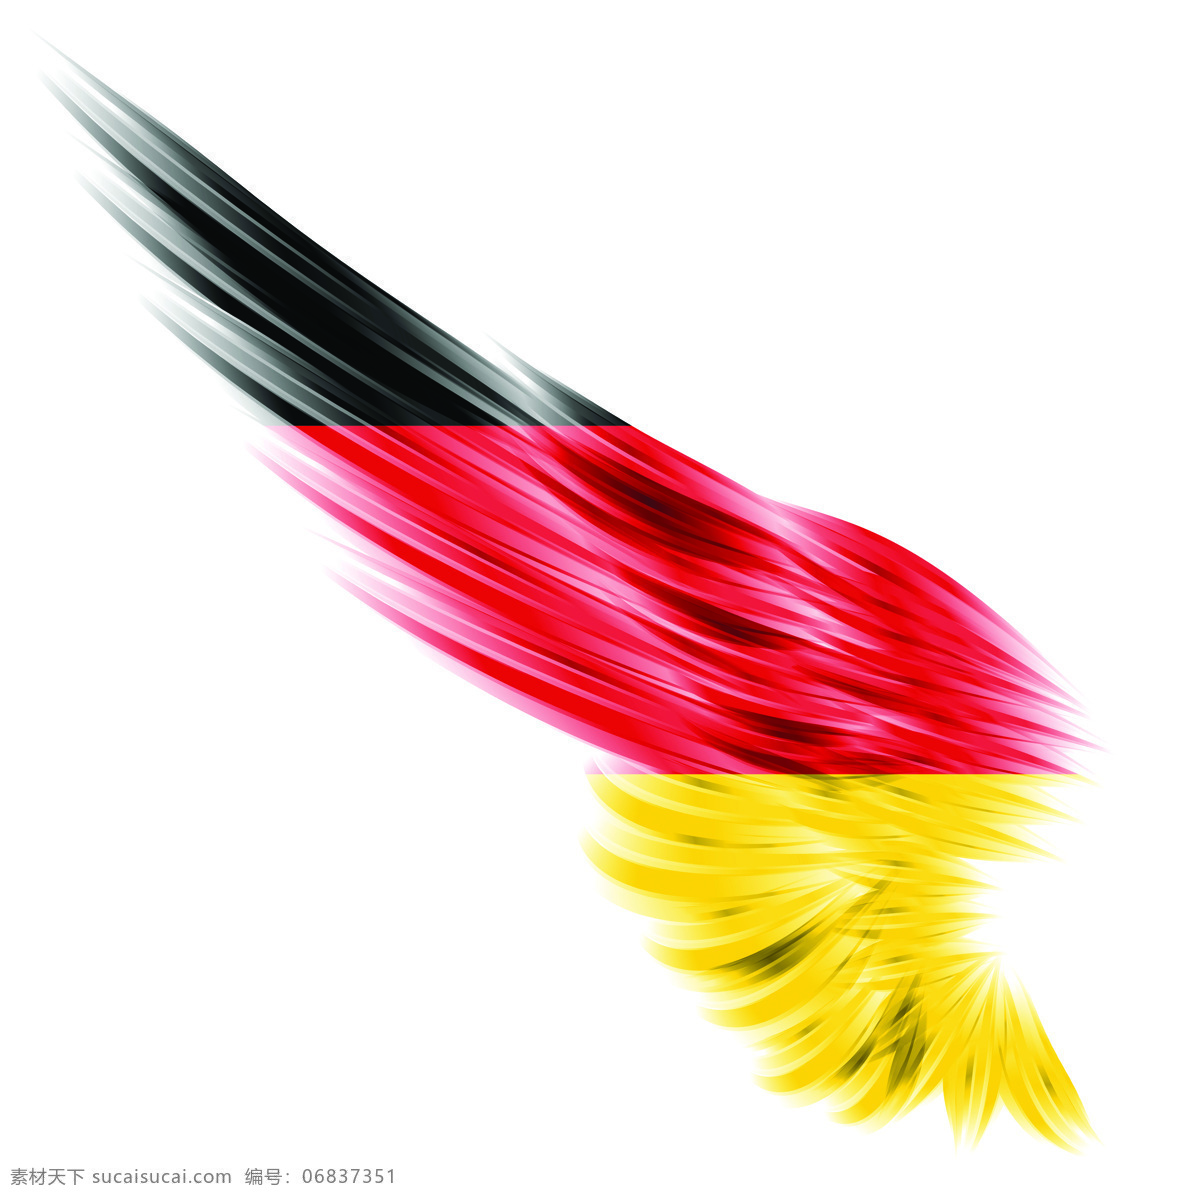 德国 国旗 创意 翅膀 变形 德国国旗 高清素材 创意翅膀变形 风景 生活 旅游餐饮